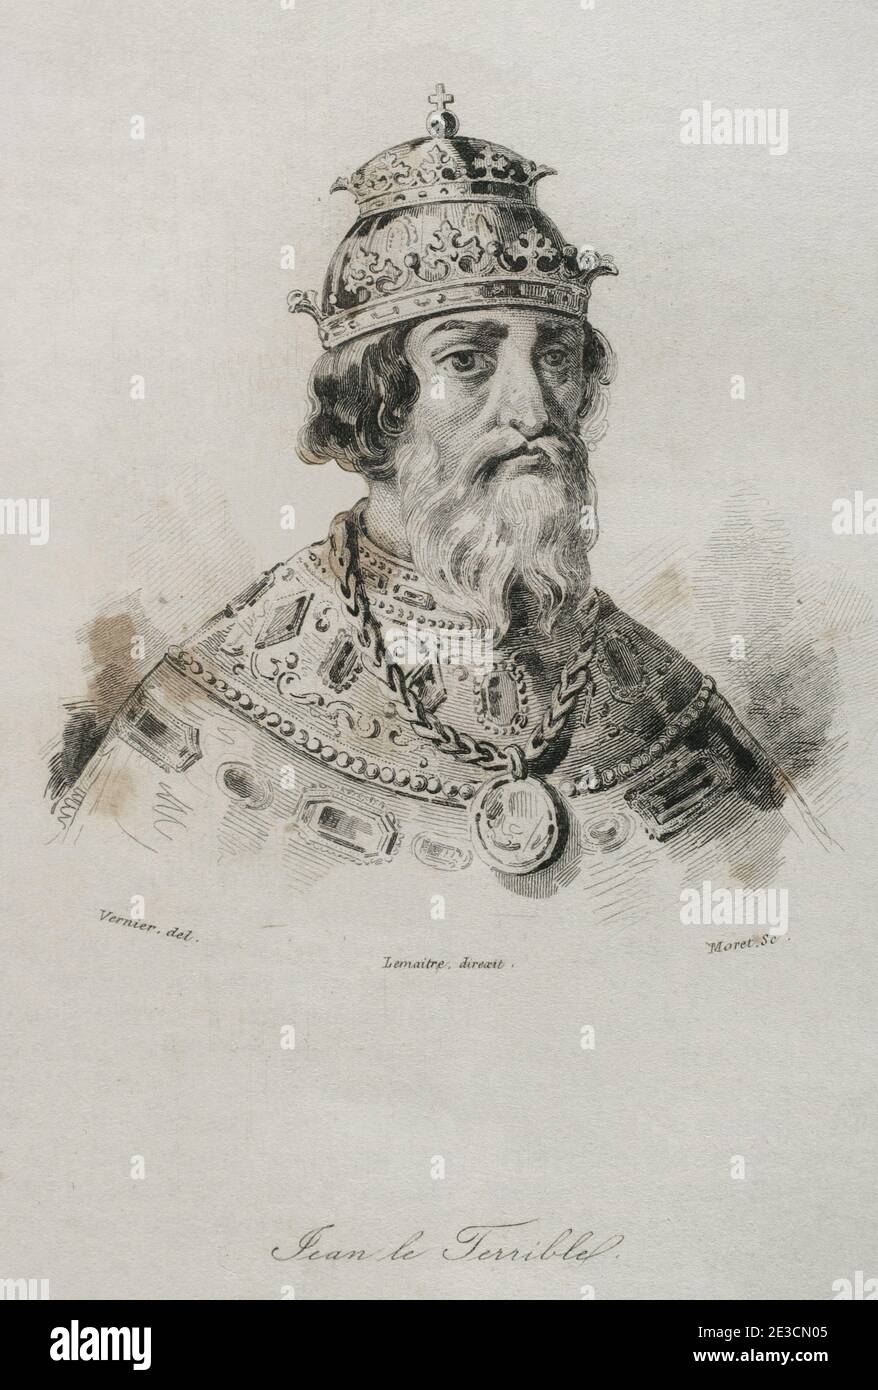 Портрет русского царя Ивана Грозного